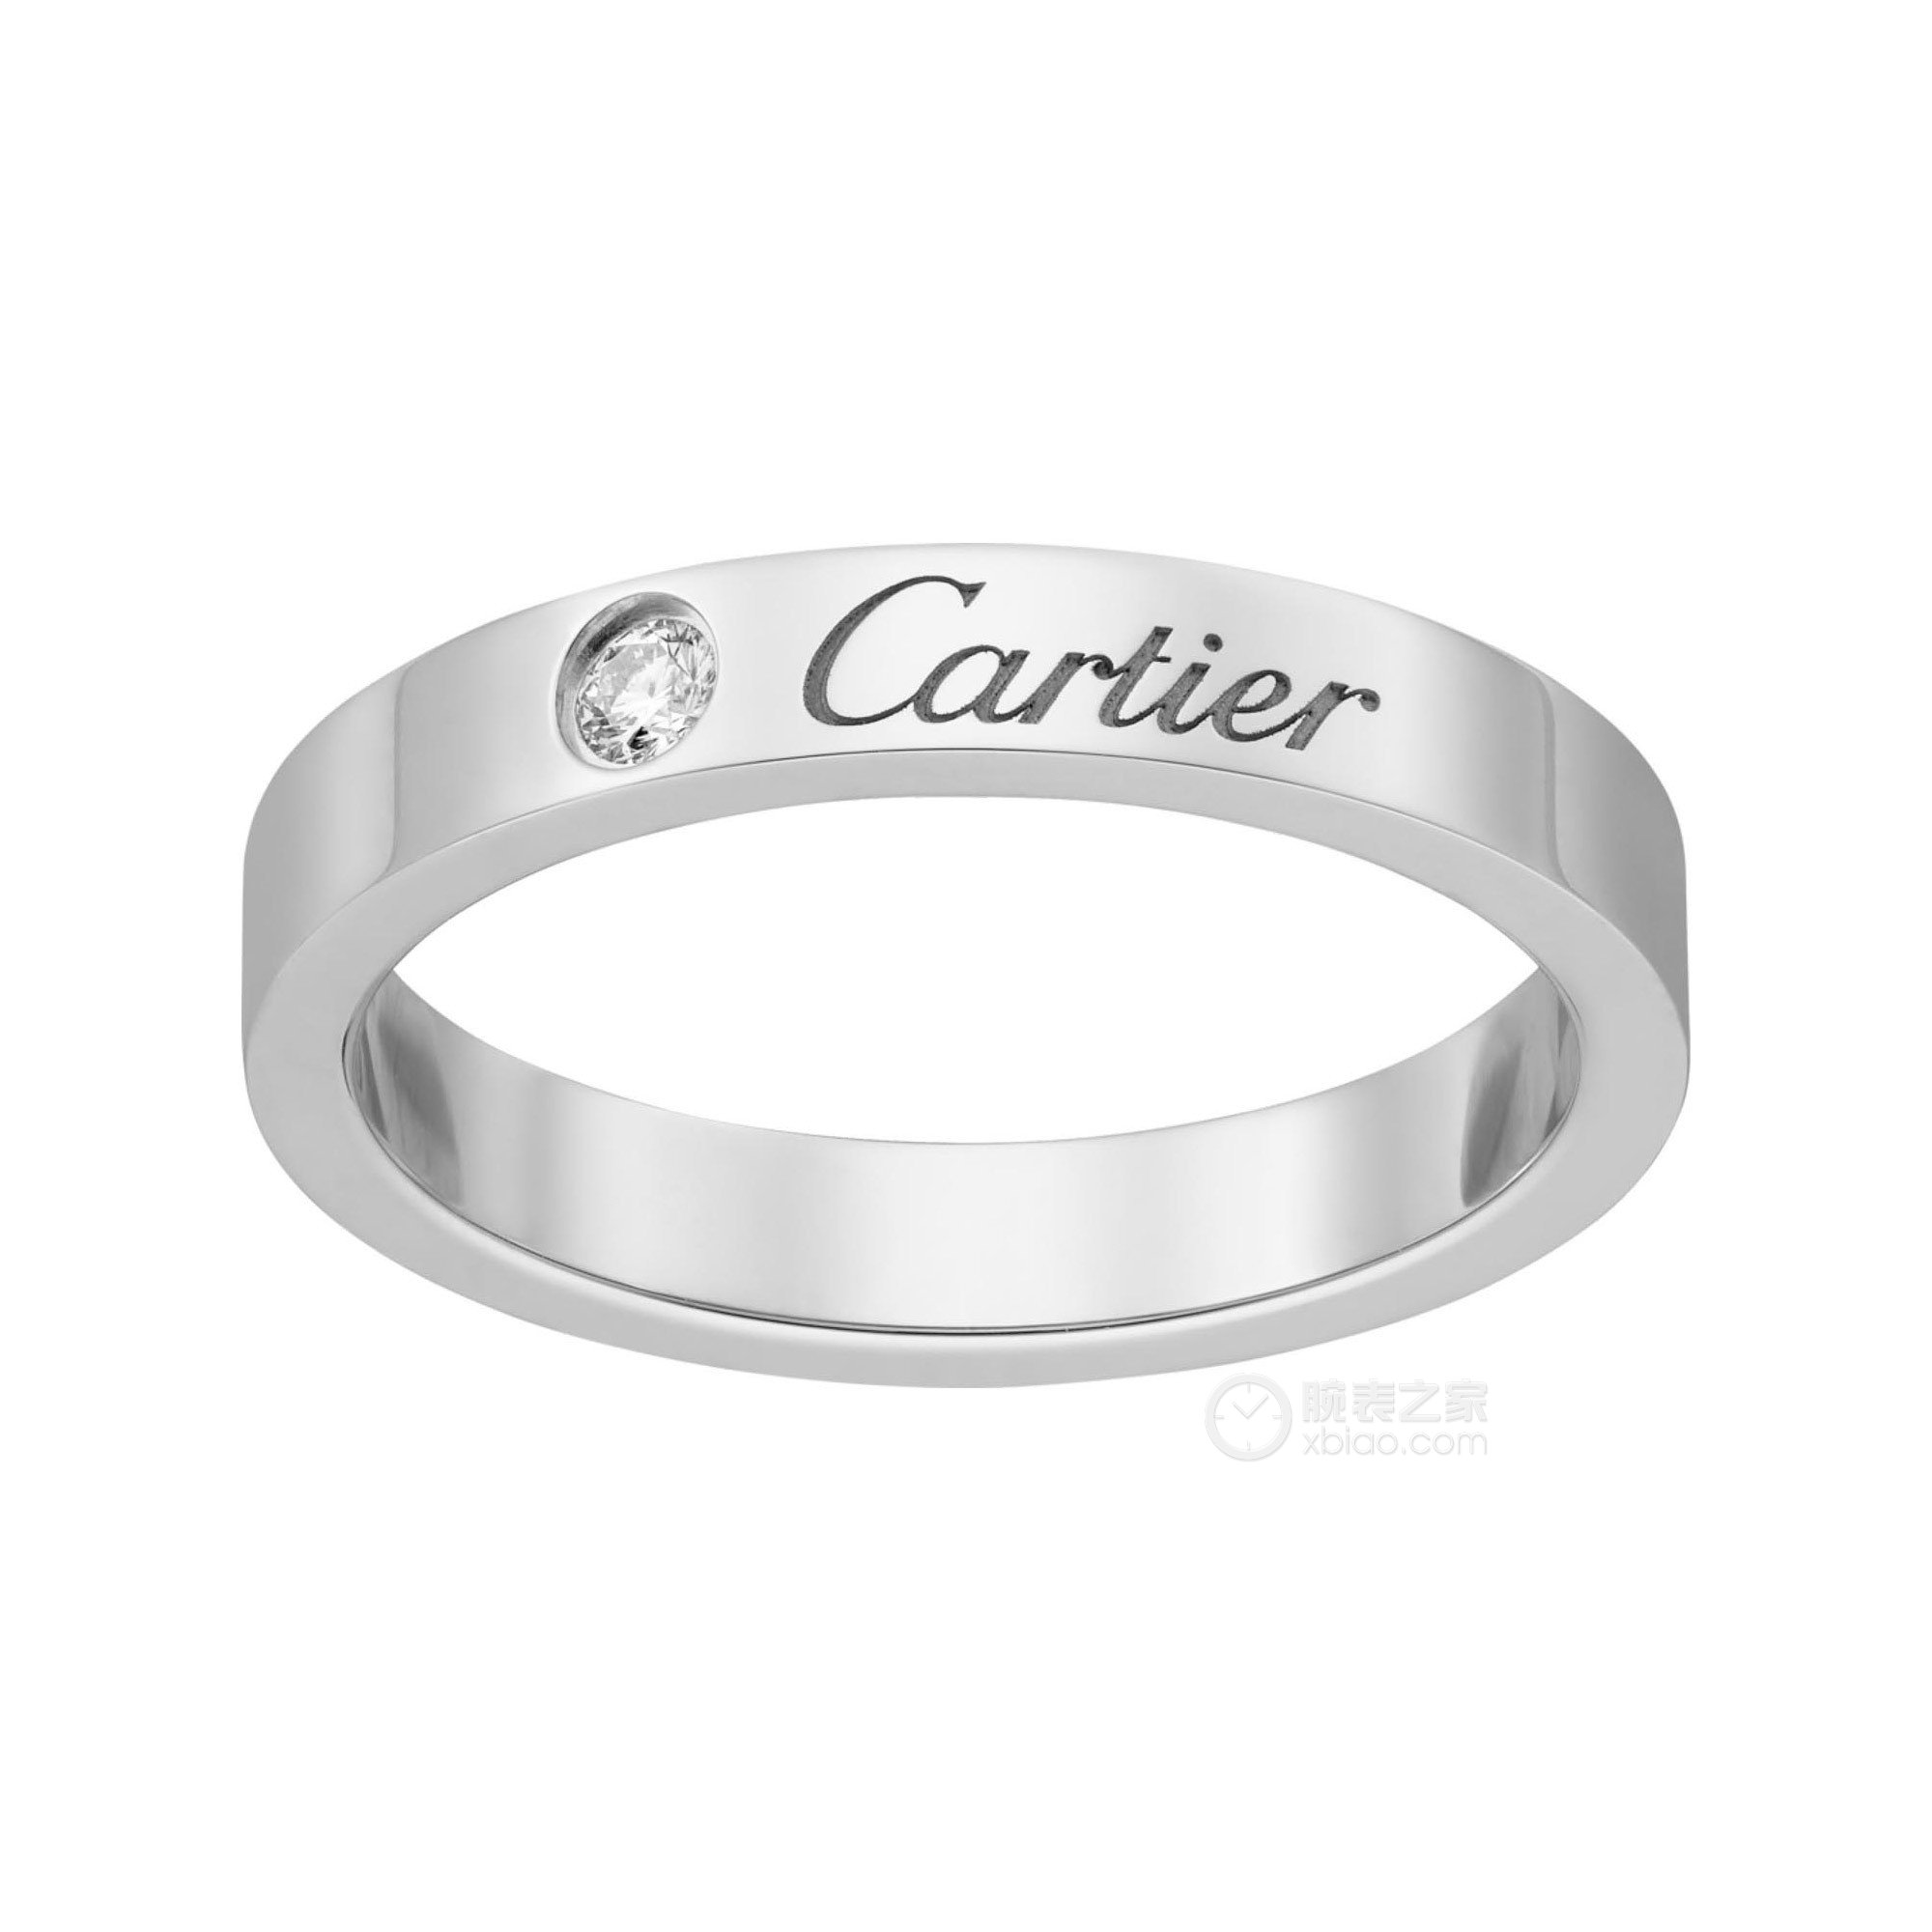 卡地亚C DE CARTIER系列B4051300戒指